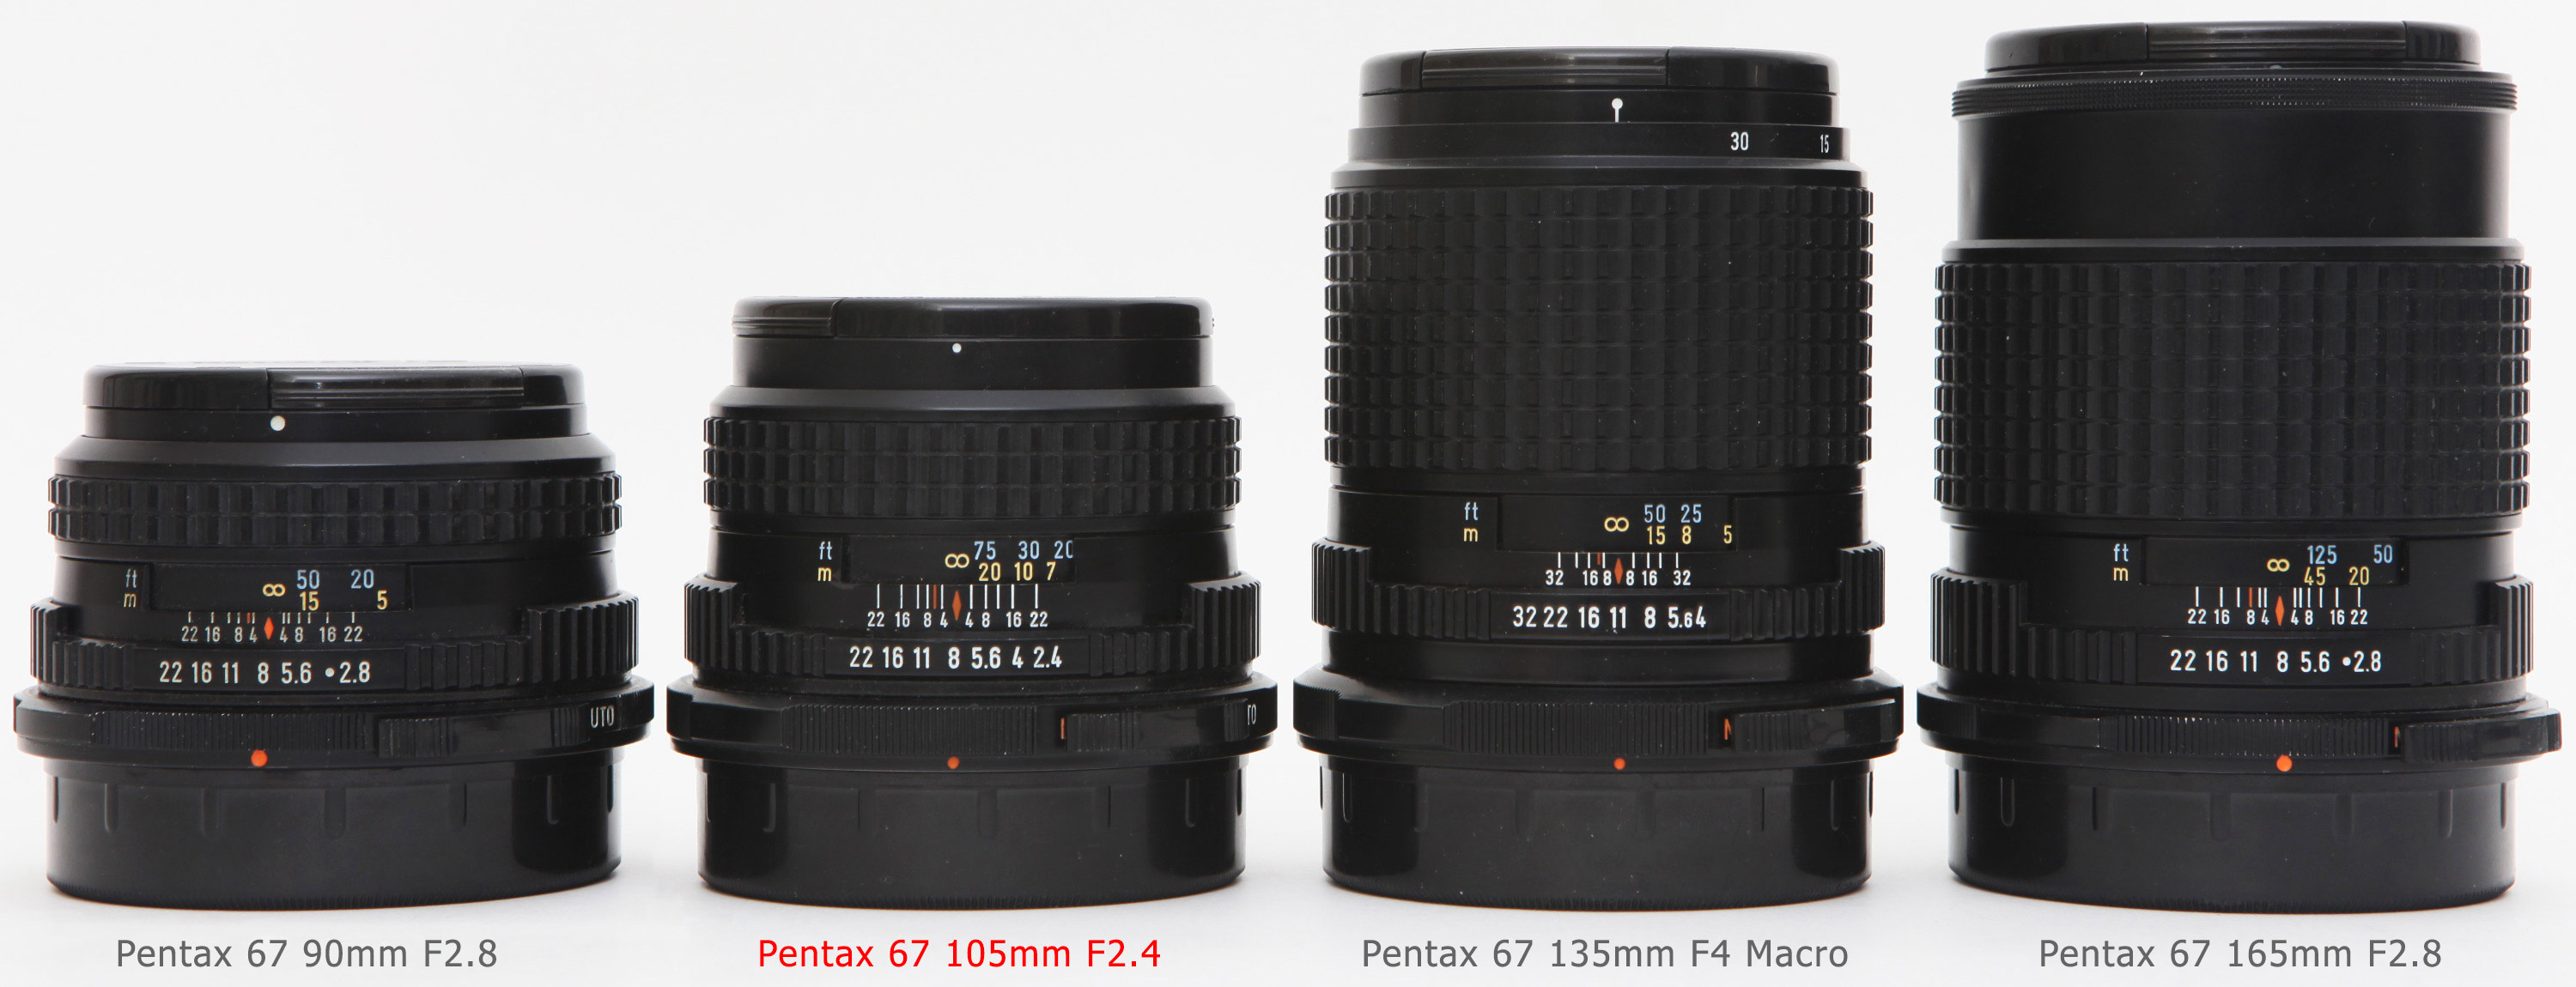 カメラ レンズ(単焦点) Pentax 67 105mm F2.4: Lens review, Details, Experience, Bokeh, Samples